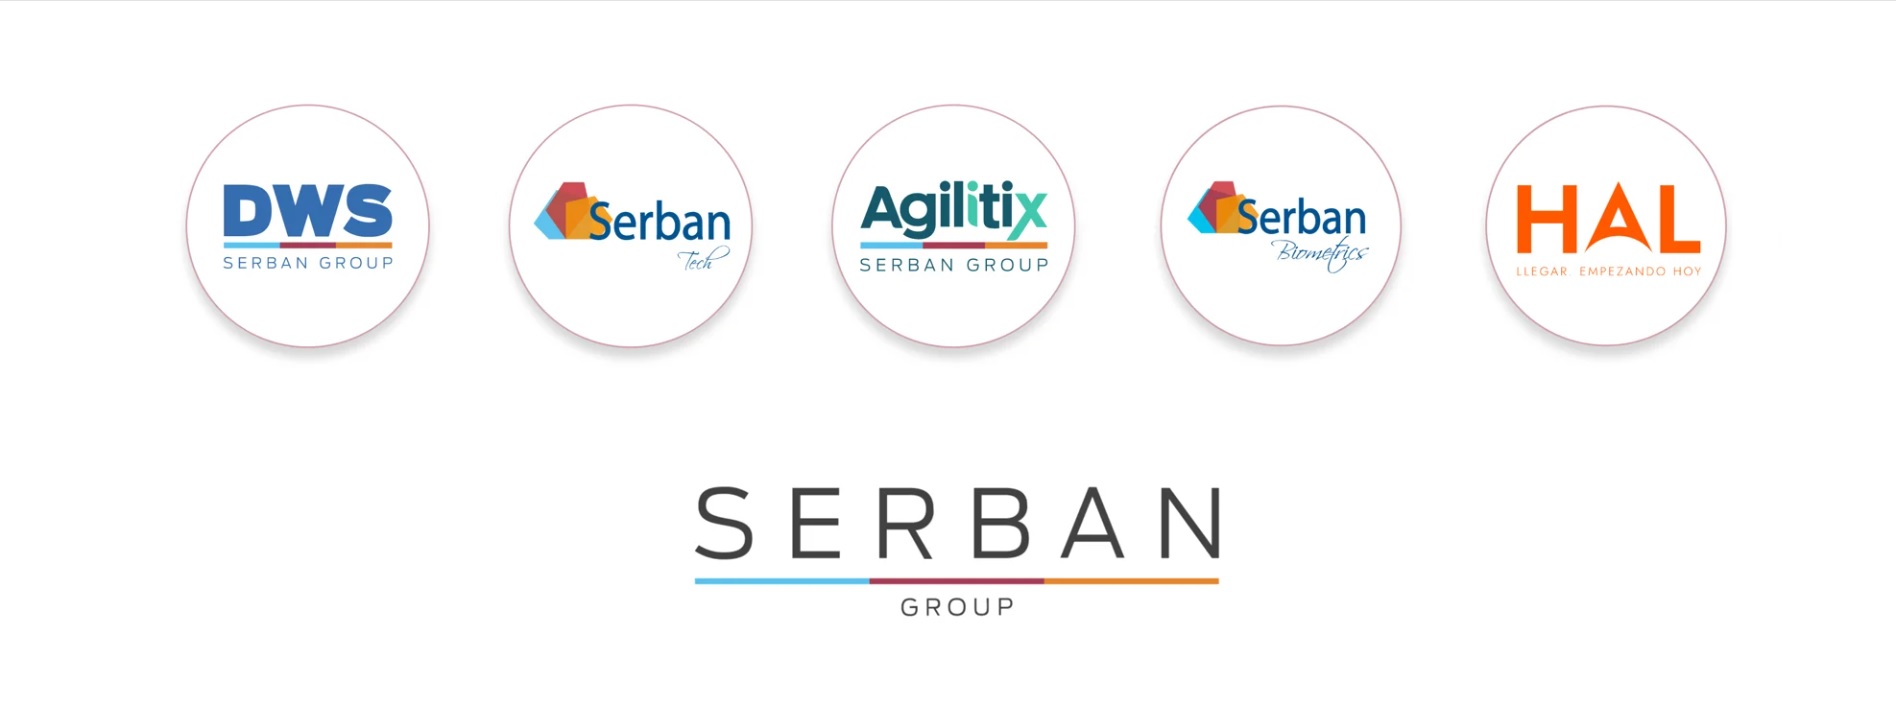 HAL Company anuncia su integración con SerbanGroup